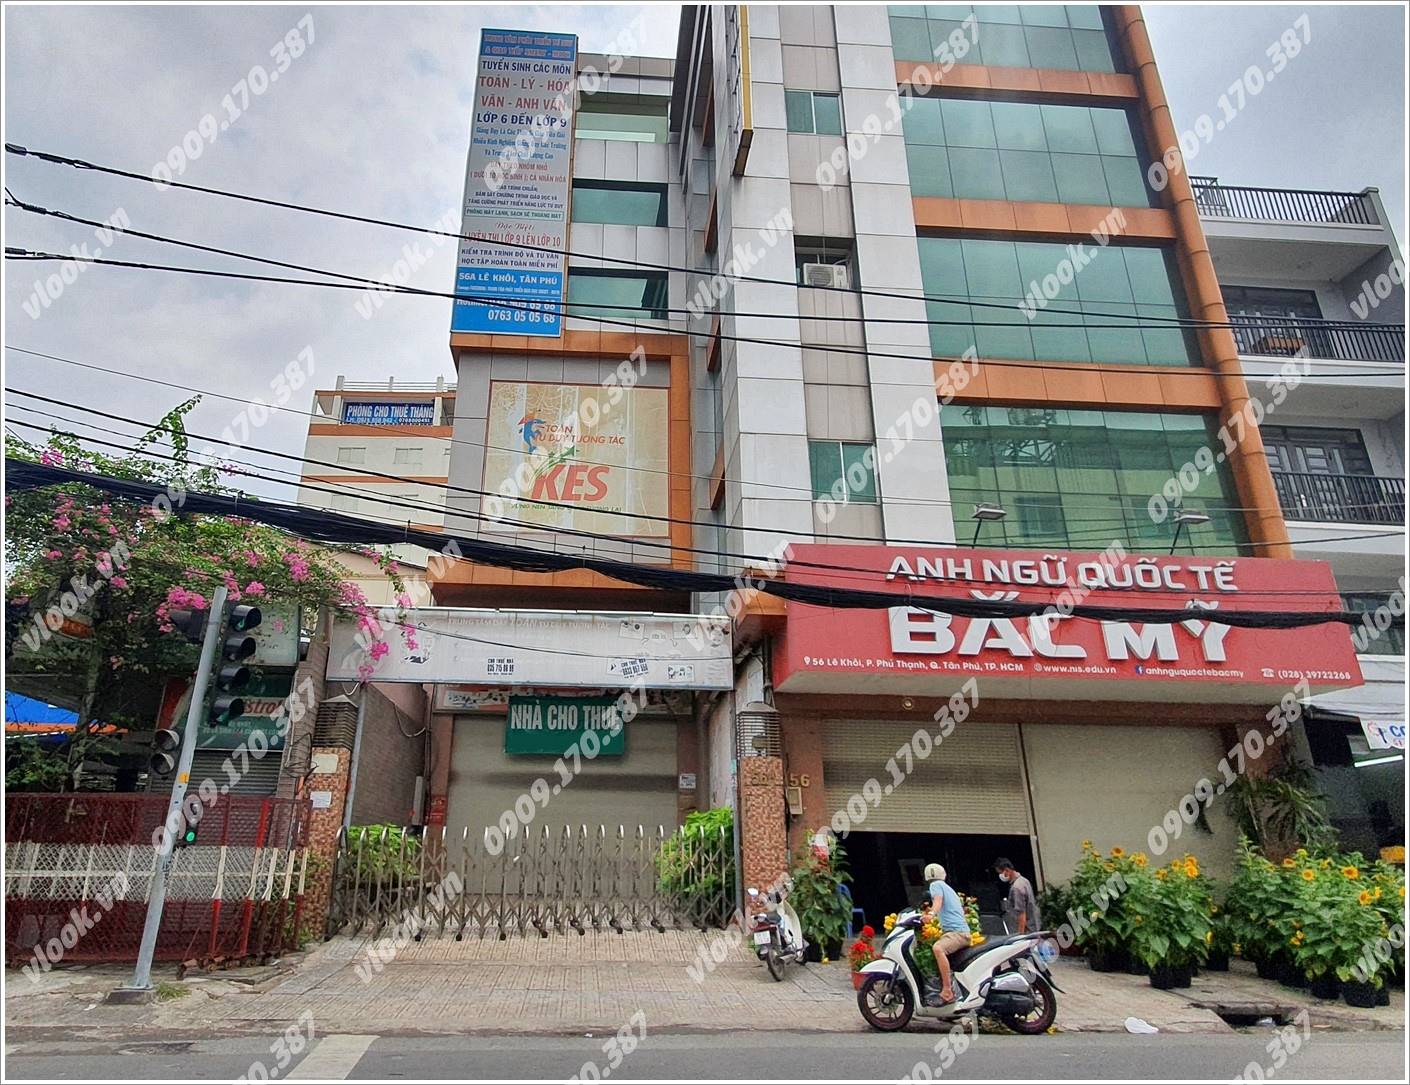 Cao ốc văn phòng cho thuê tòa nhà KES Building, Lê Khôi, Quận Tân Phú, TPHCM - vlook.vn